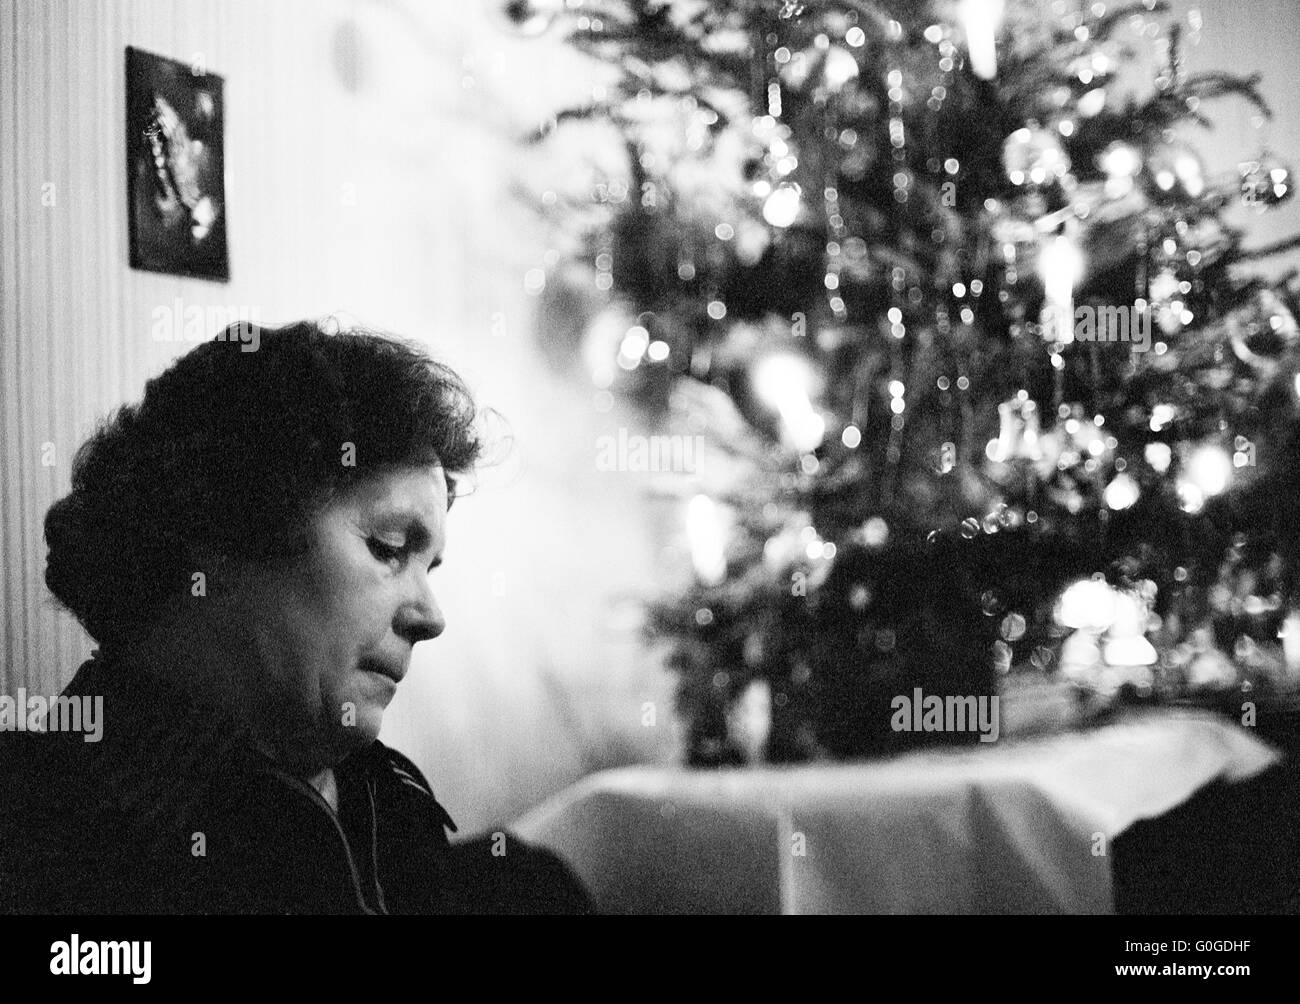 Années 70, photo en noir et blanc, les gens, femmes 50 à 65 ans seuls assis dans le salon, derrière la décoration de Noël, la solitude, c'est triste, déprimé, réfléchi Banque D'Images